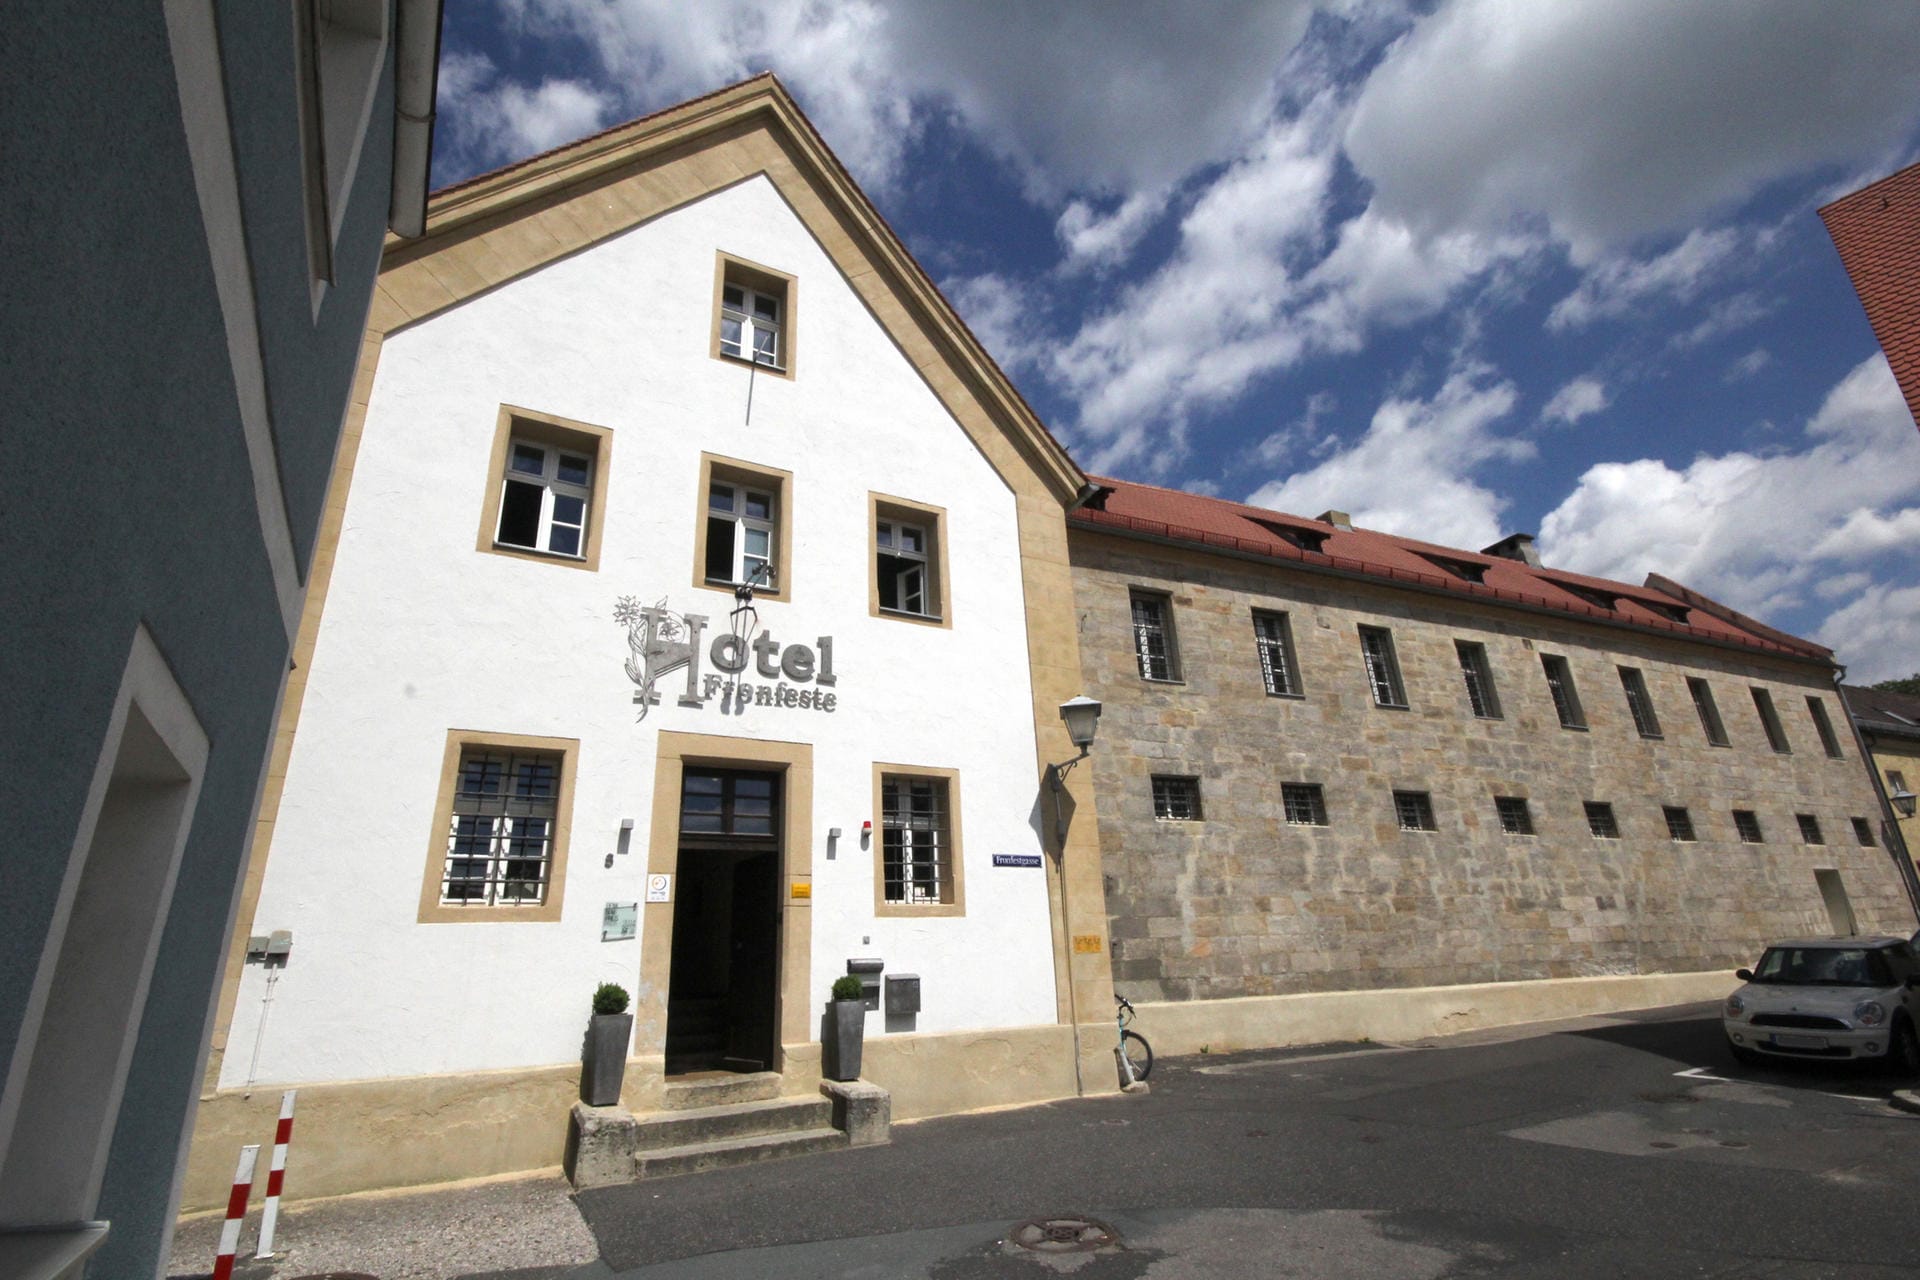 Das Hotel "Fronfeste" in Amberg ist ebenfalls eines von mehreren Gefängnishotels in Deutschland.